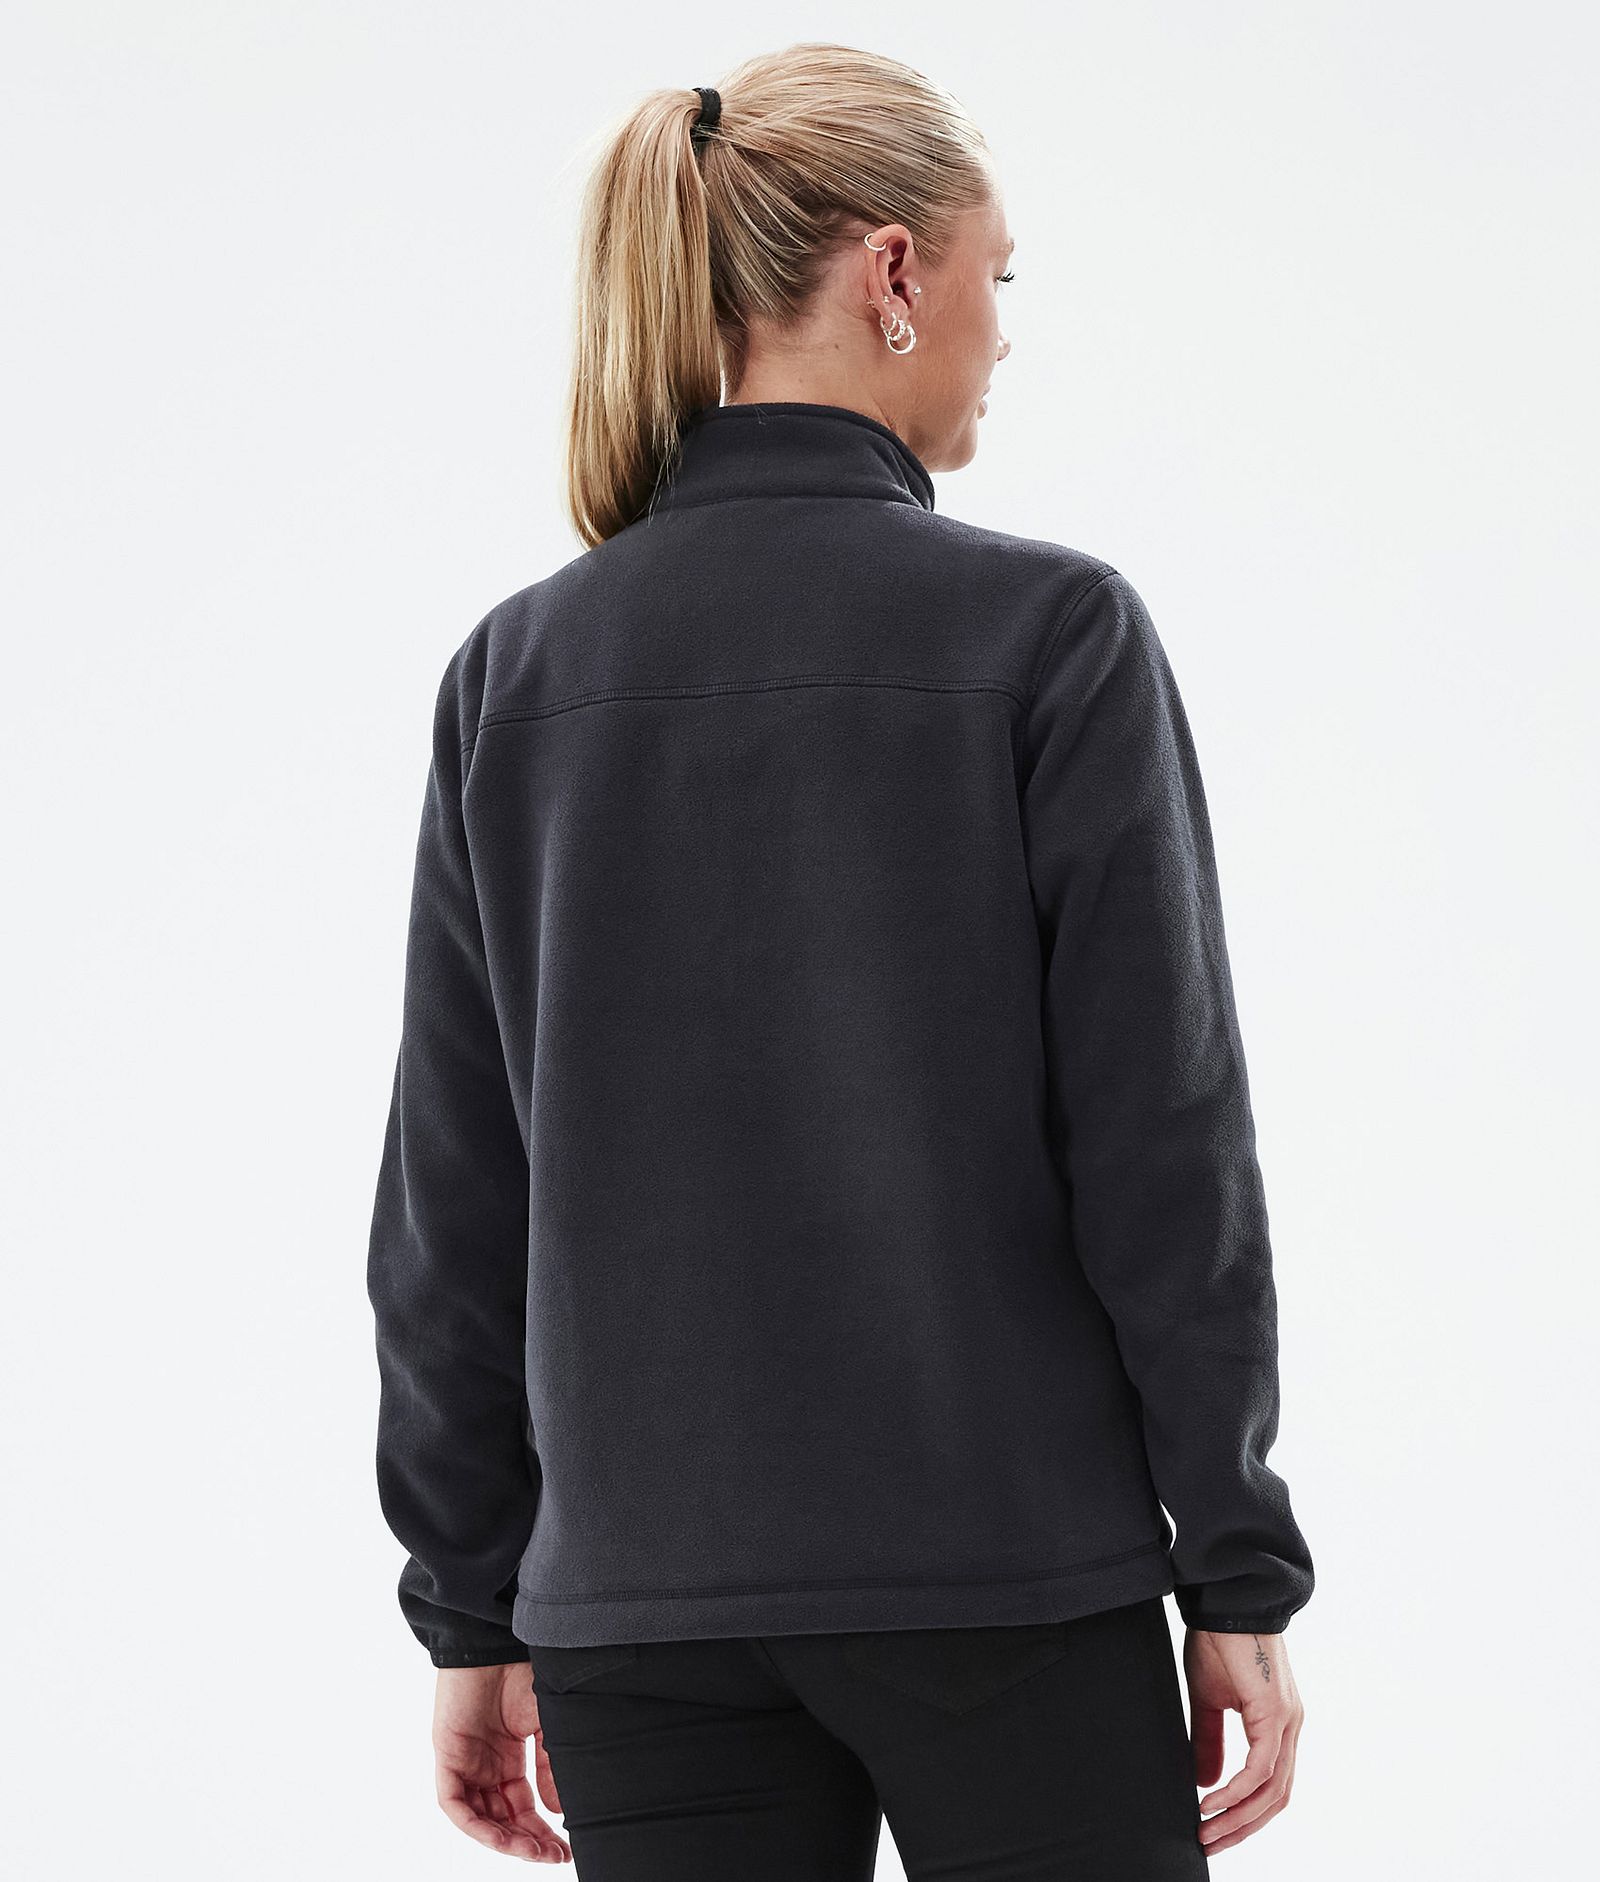 Echo W Fleece Sweater Women Black Renewed, Image 5 of 5